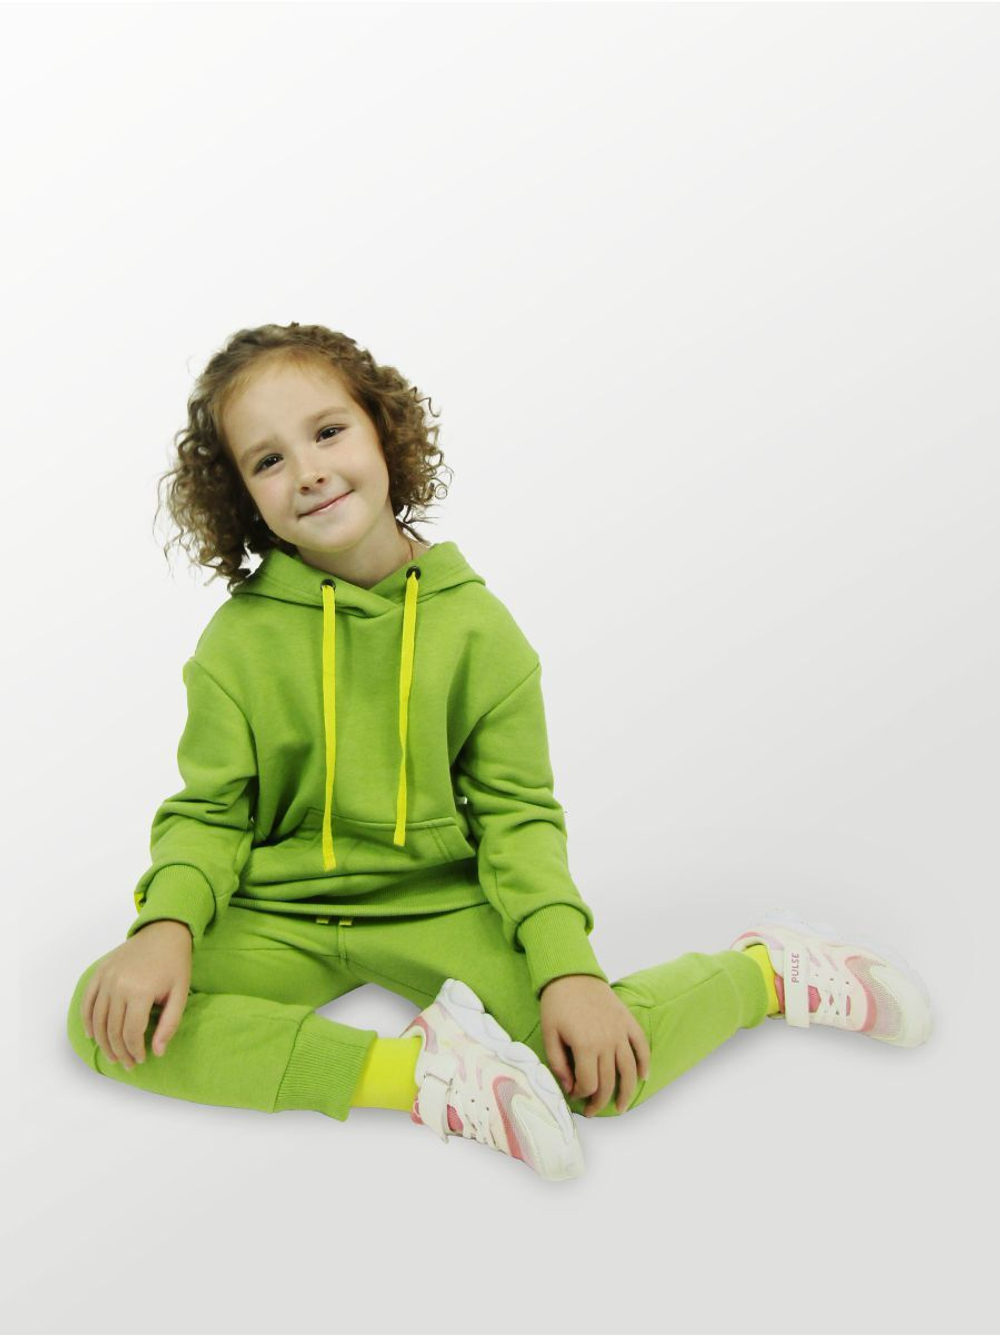 Брюки для детей, модель №2 (джоггеры), рост 110 см, зеленые